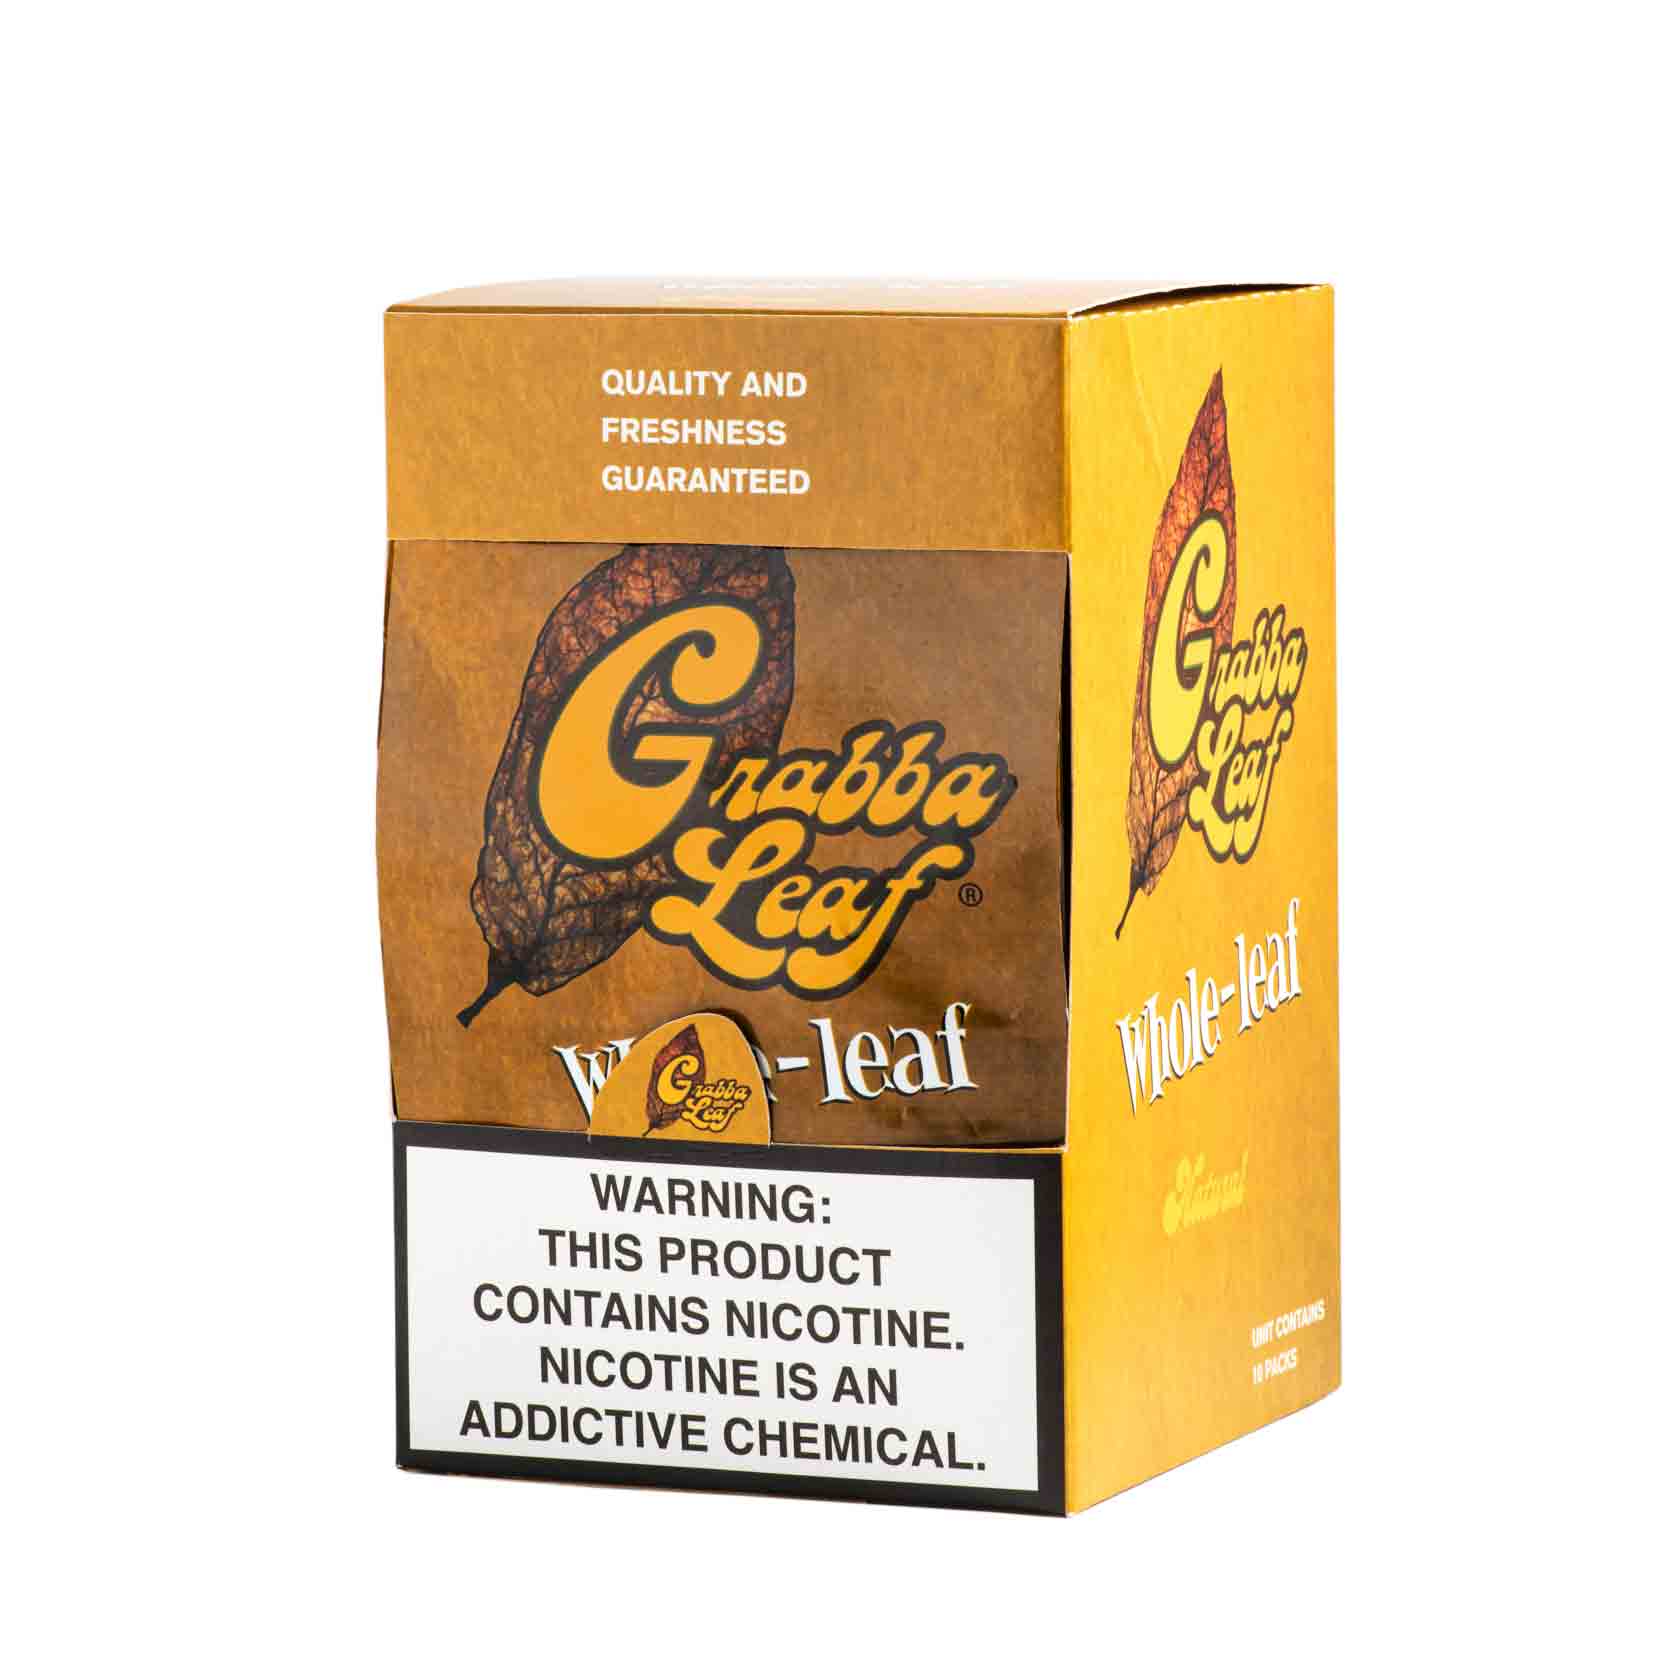 Grabba Leaf Cigar Wraps, Whole-Leaf, Yellow, 10 ct